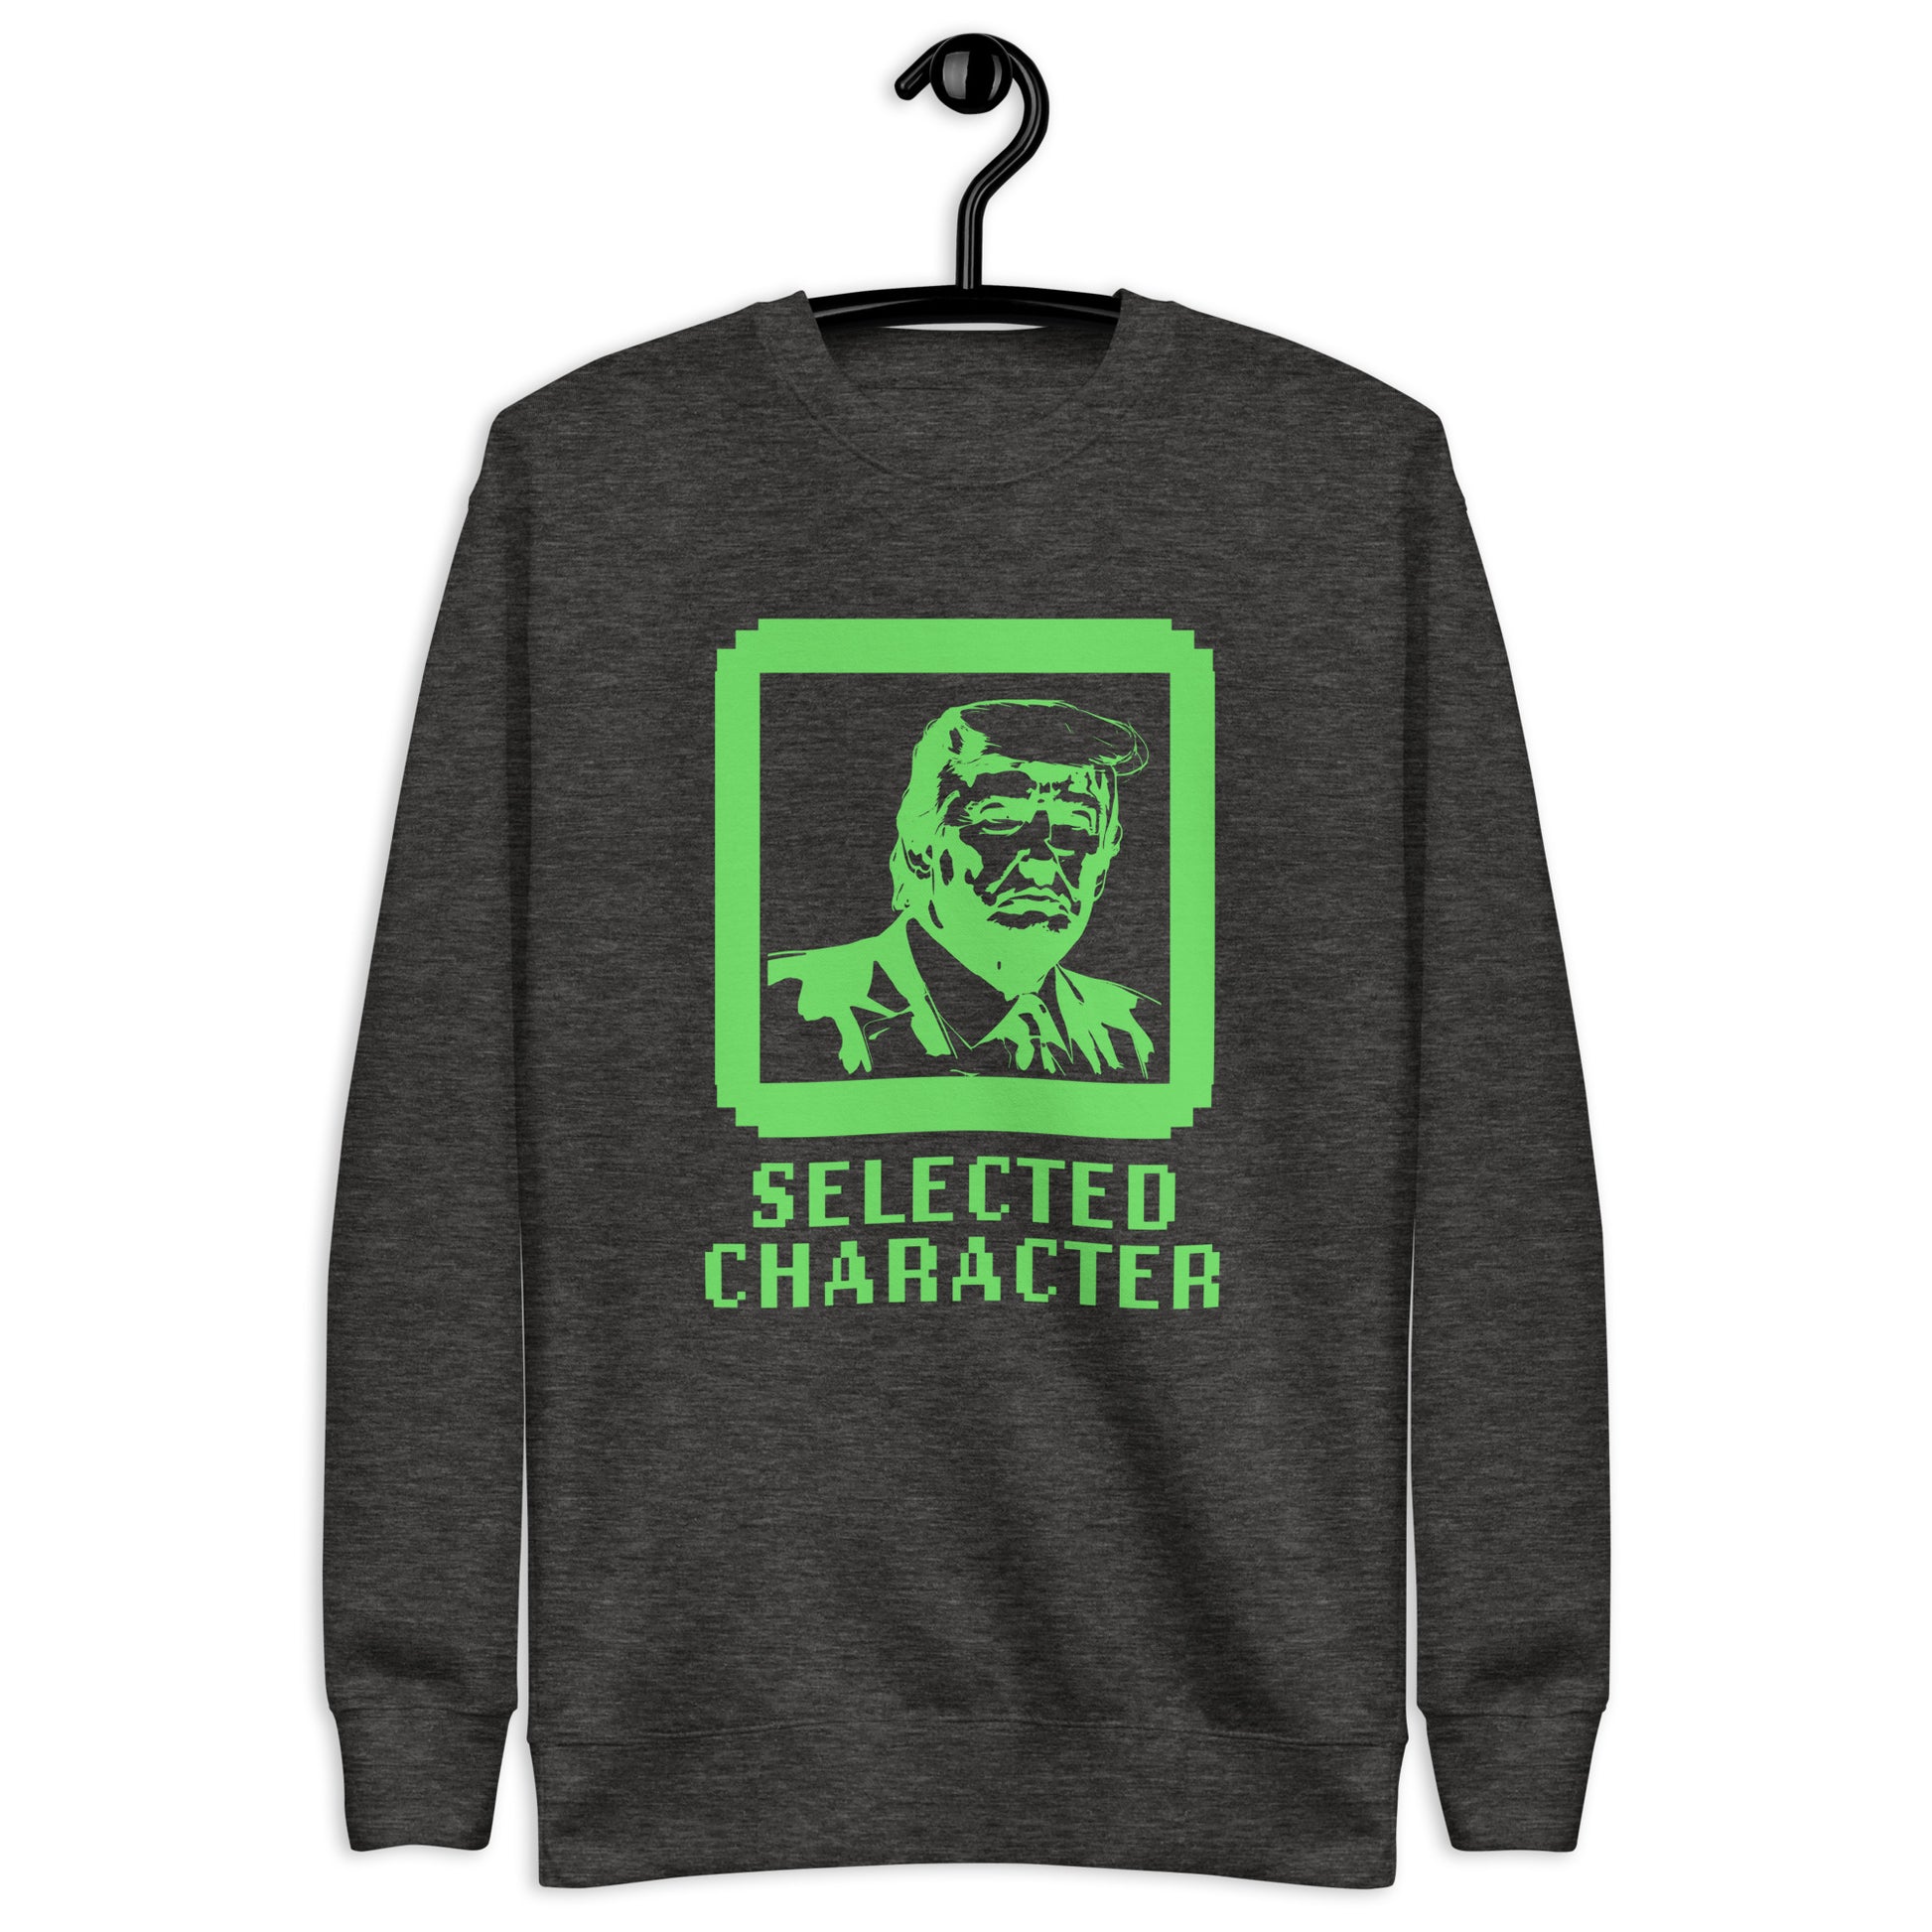 Selected Character Woman Premium Sweatshirt - Ever Trump